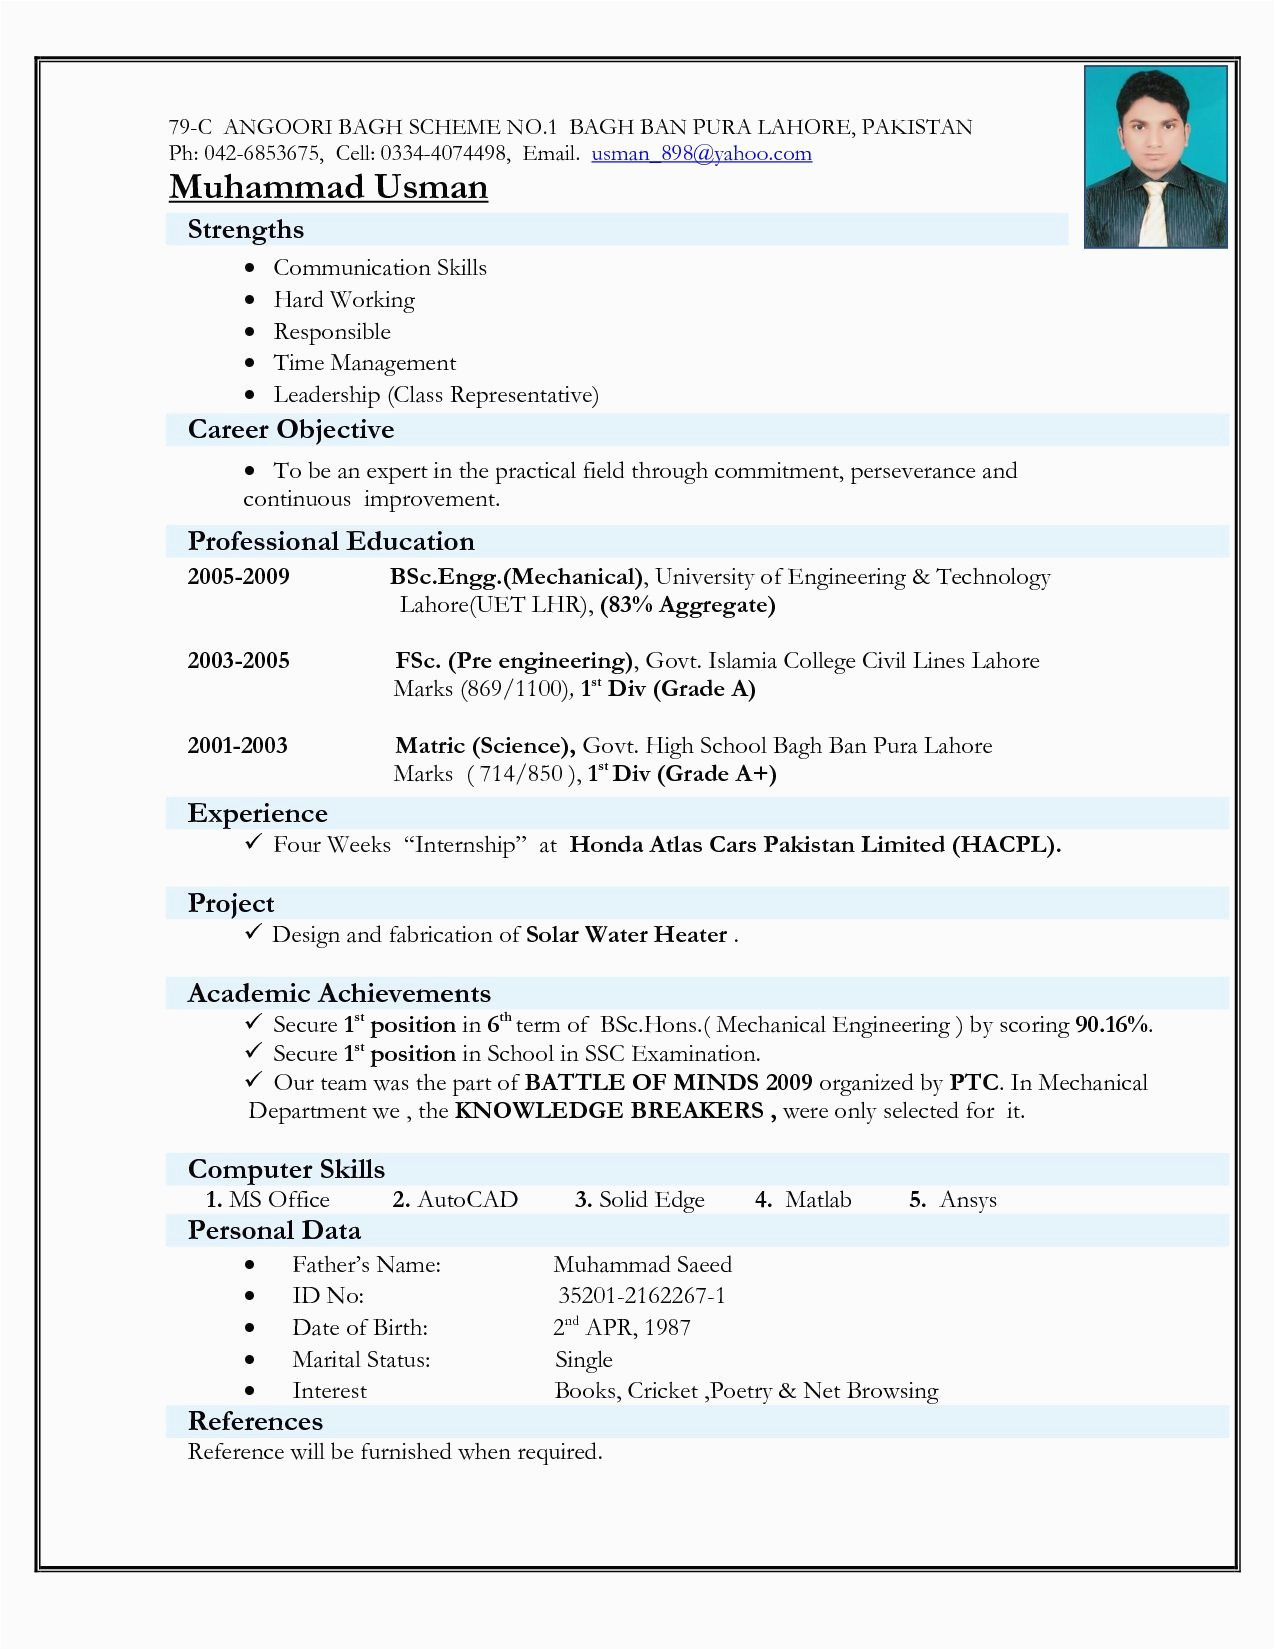 Sample Mechanical Engineering Resume for Freshers Resume format for Freshers Diploma Mechanical Engineers